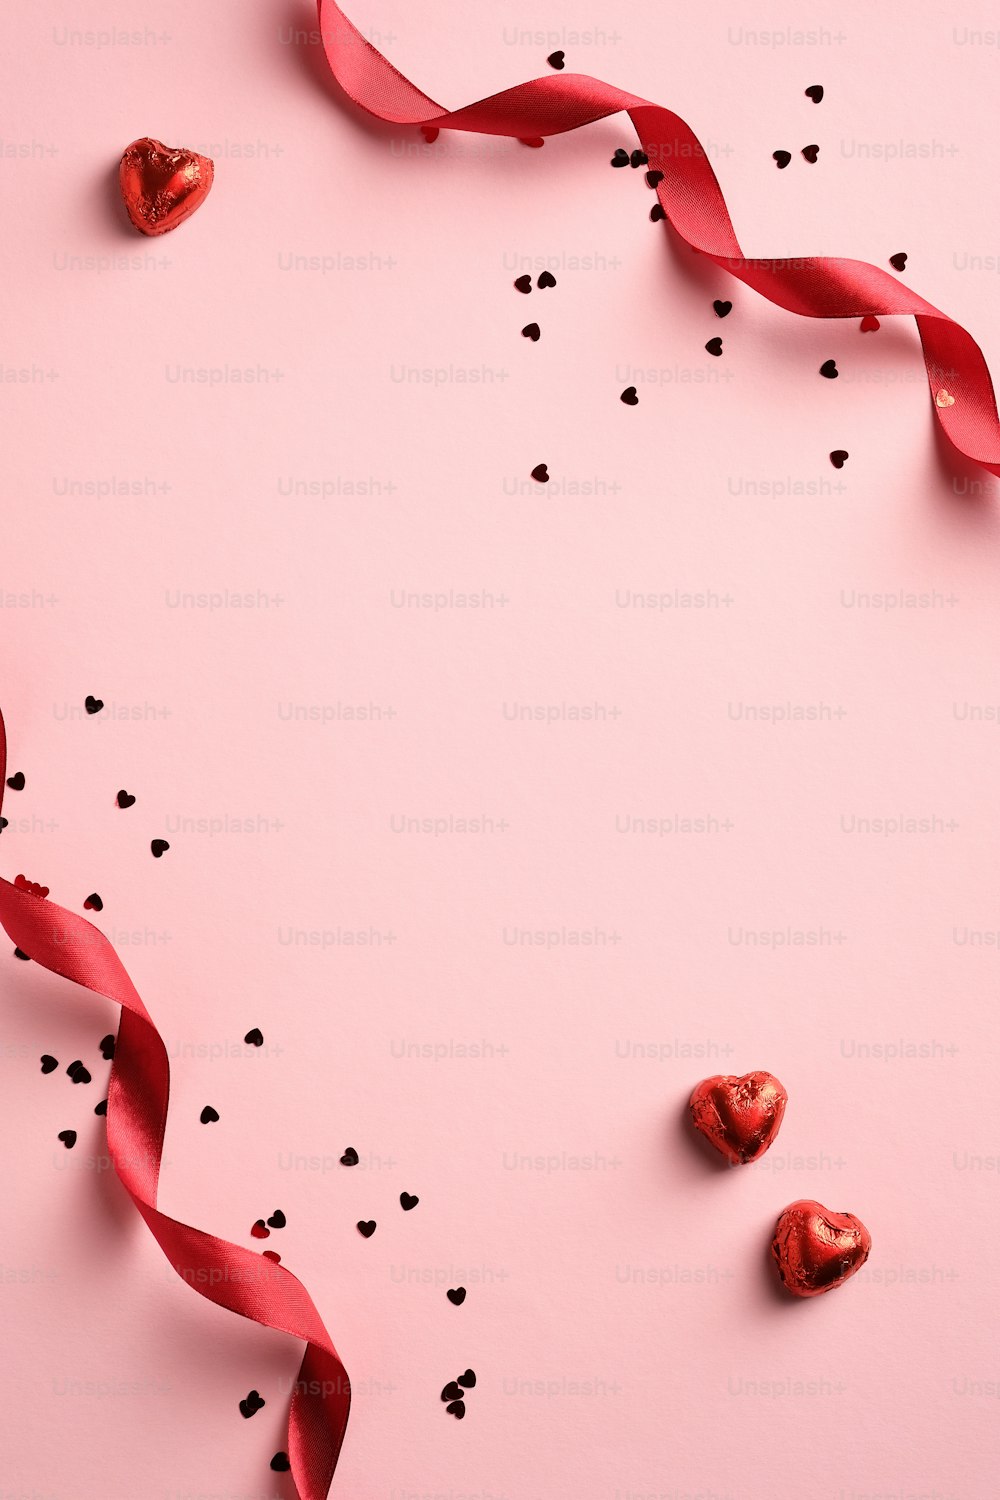 Fond élégant de la Saint-Valentin avec ruban rouge, confettis, bonbons en forme de coeur sur fond rose. Style minimaliste. Pose à plat.